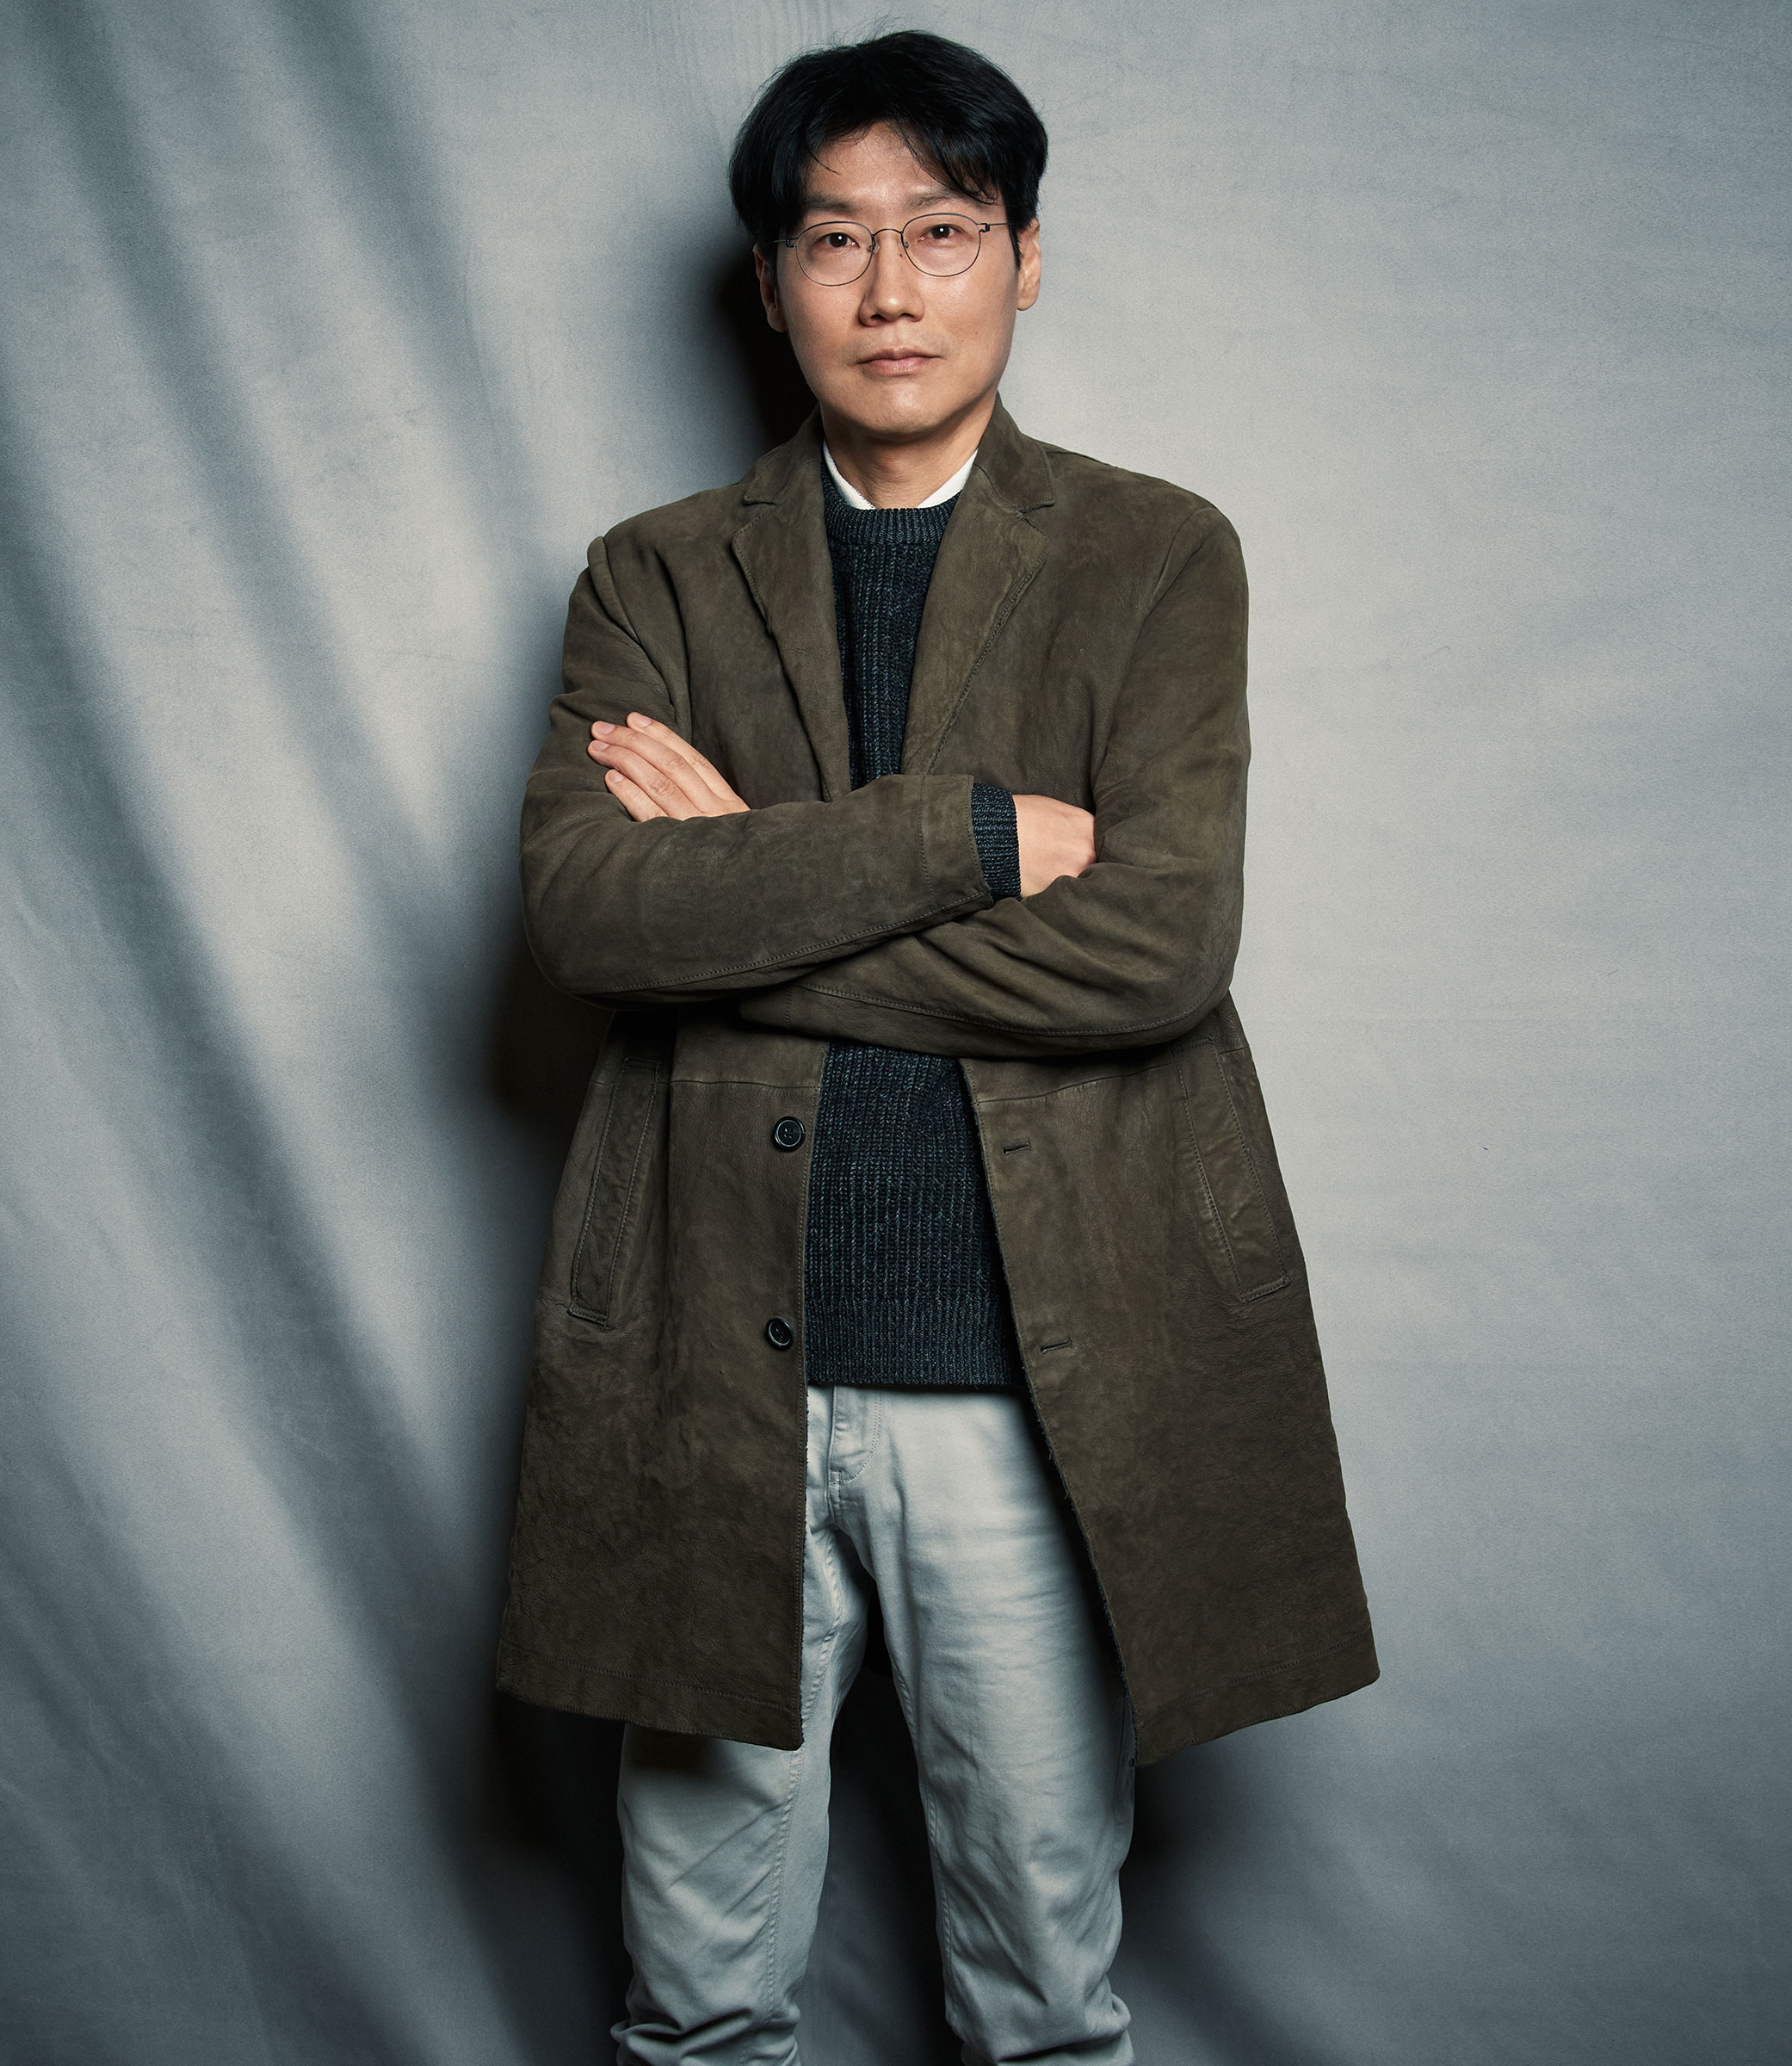 TIME 100 2022: Hwang Dong-hyuk